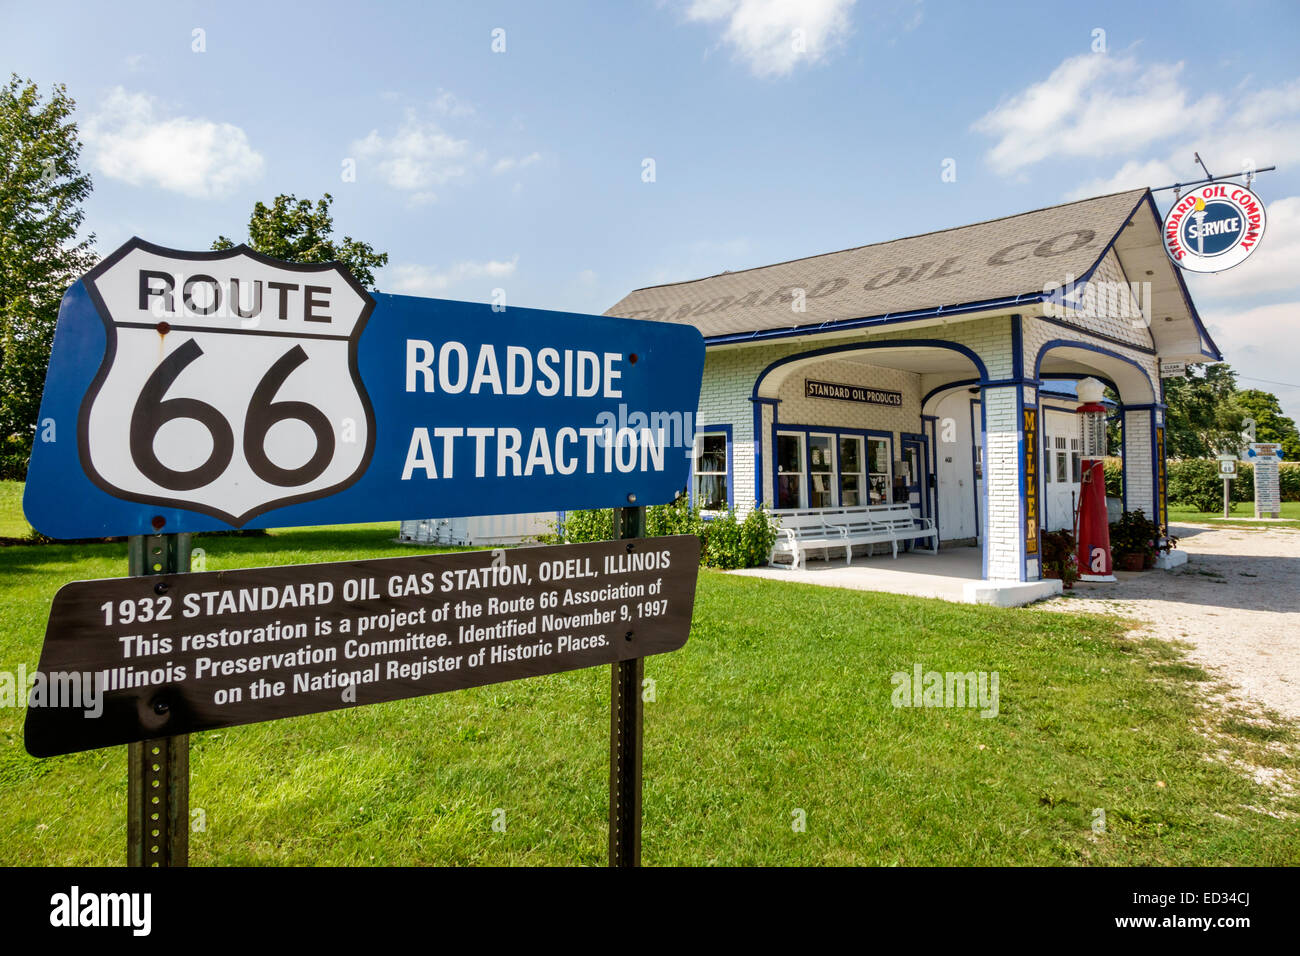 Illinois Odell, autoroute historique route 66,1932 Standard Oil Gas Station, essence,panneau,informations,bord de route,IL140905053 Banque D'Images